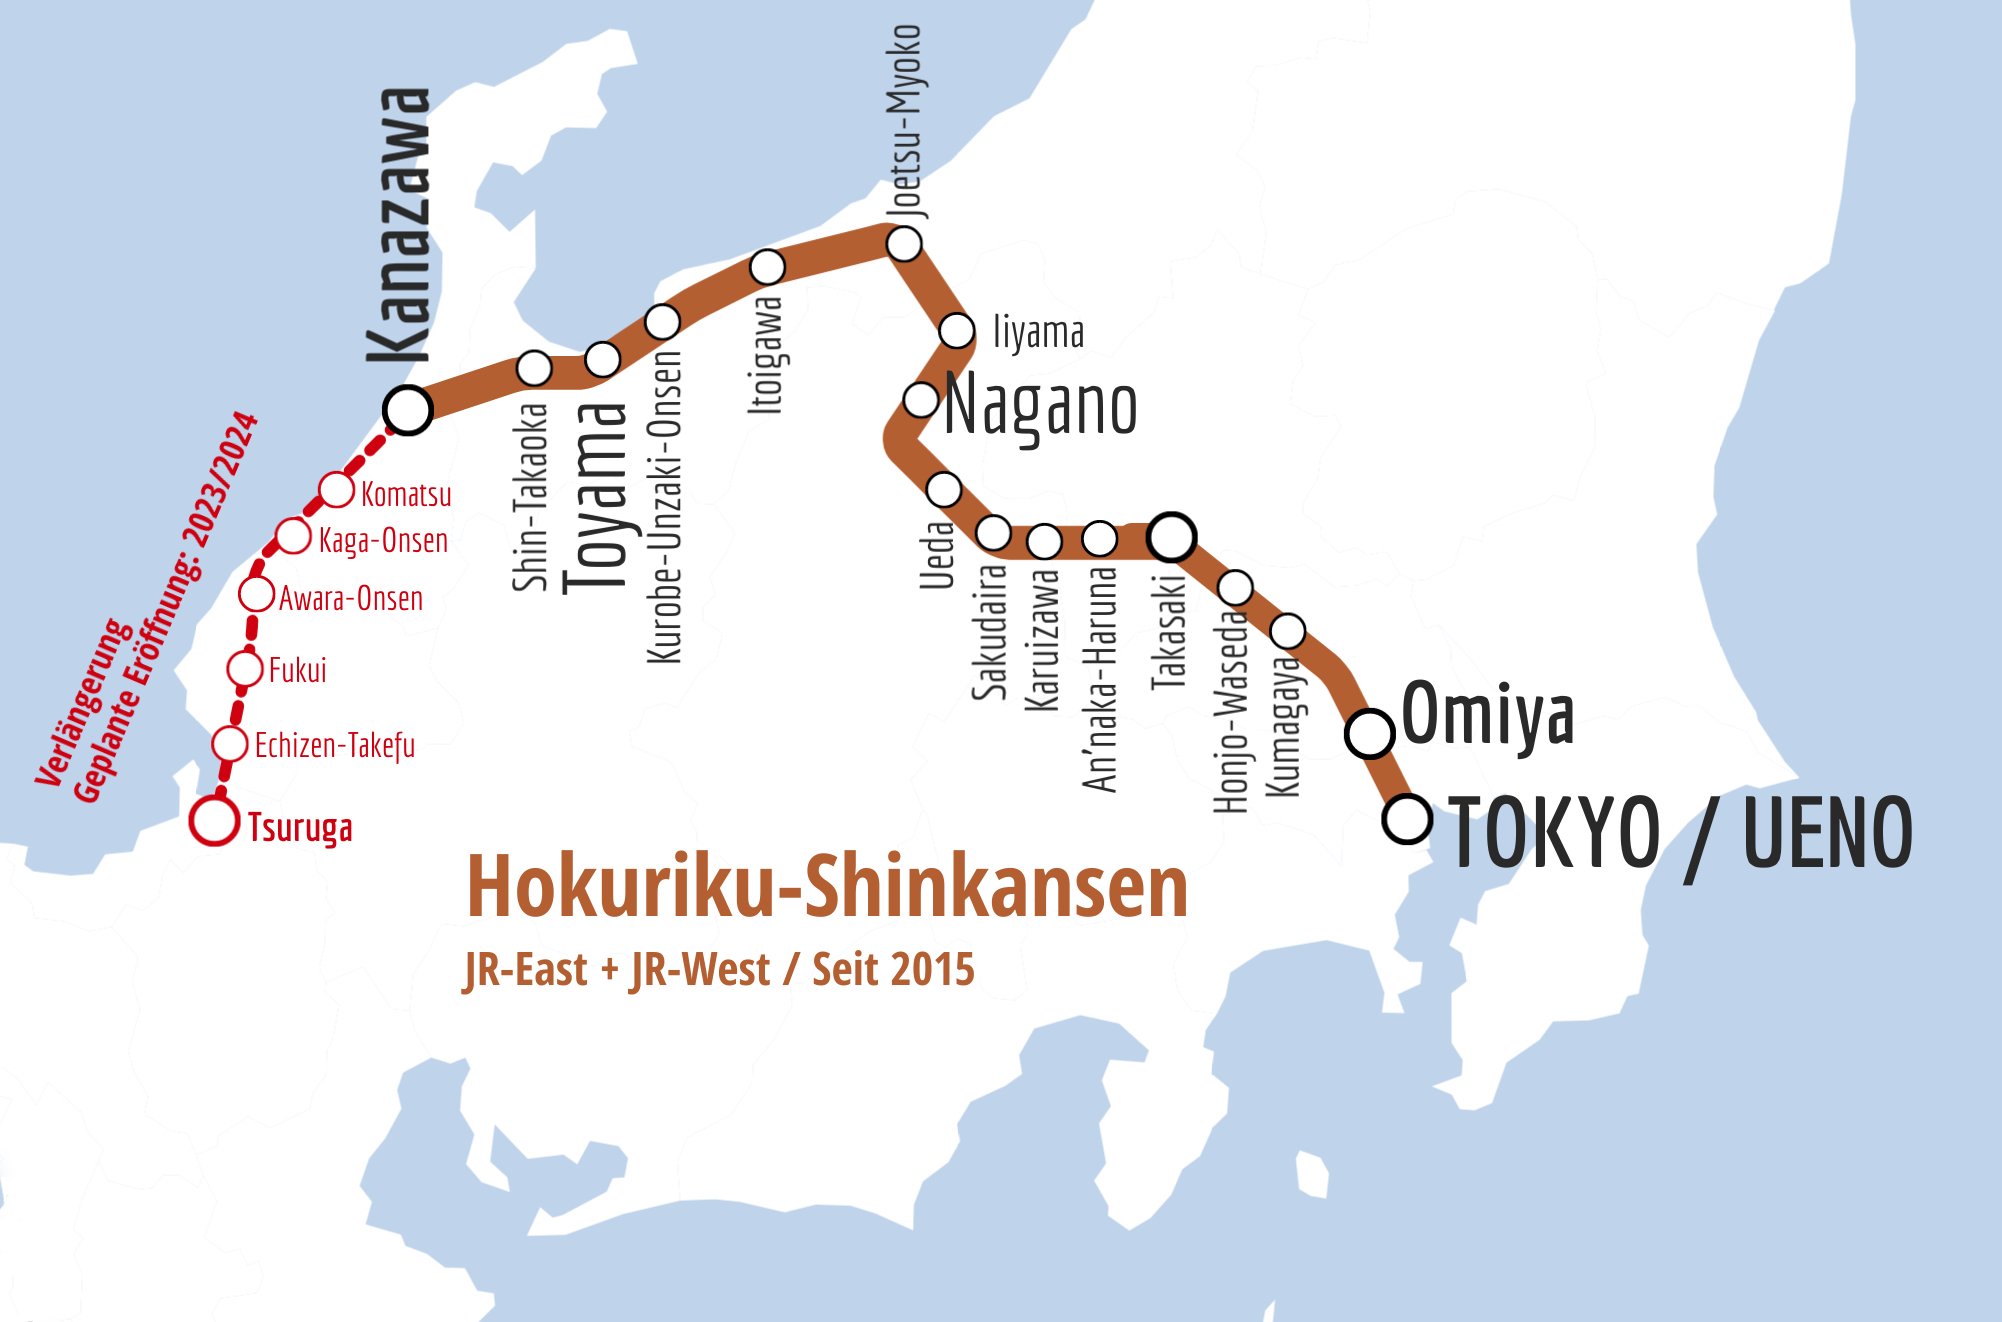 Der Hokuriku-Shinkansen und die geplante Verlängerung.